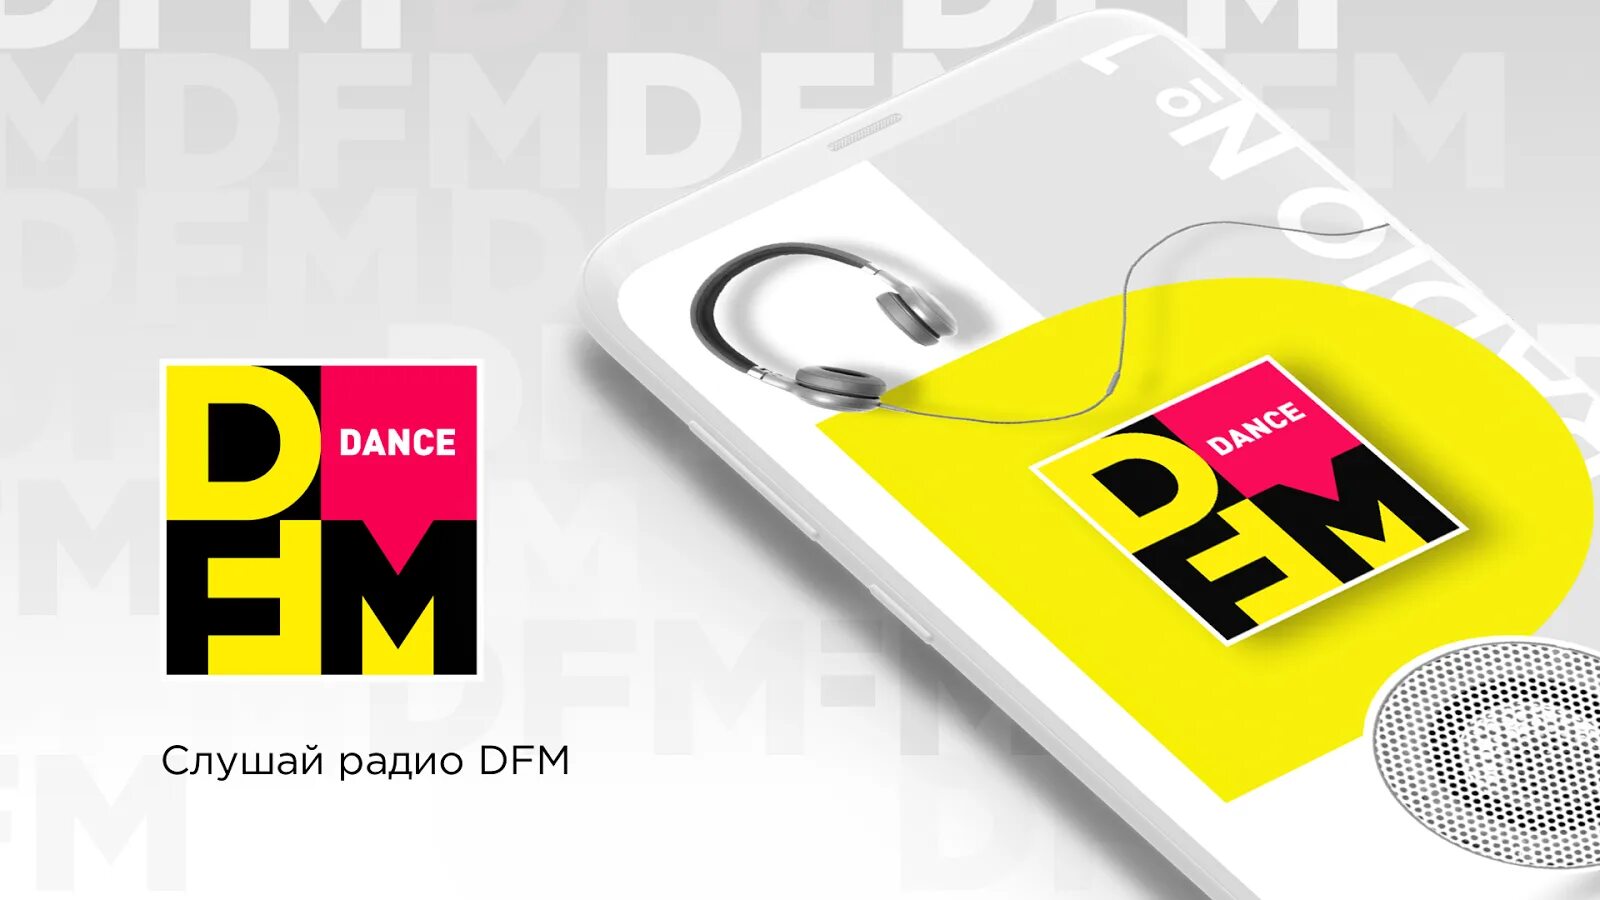 DFM. DFM радио. Сайт радиостанции DFM. Логотип ди ФМ. Эфир радио ди фм